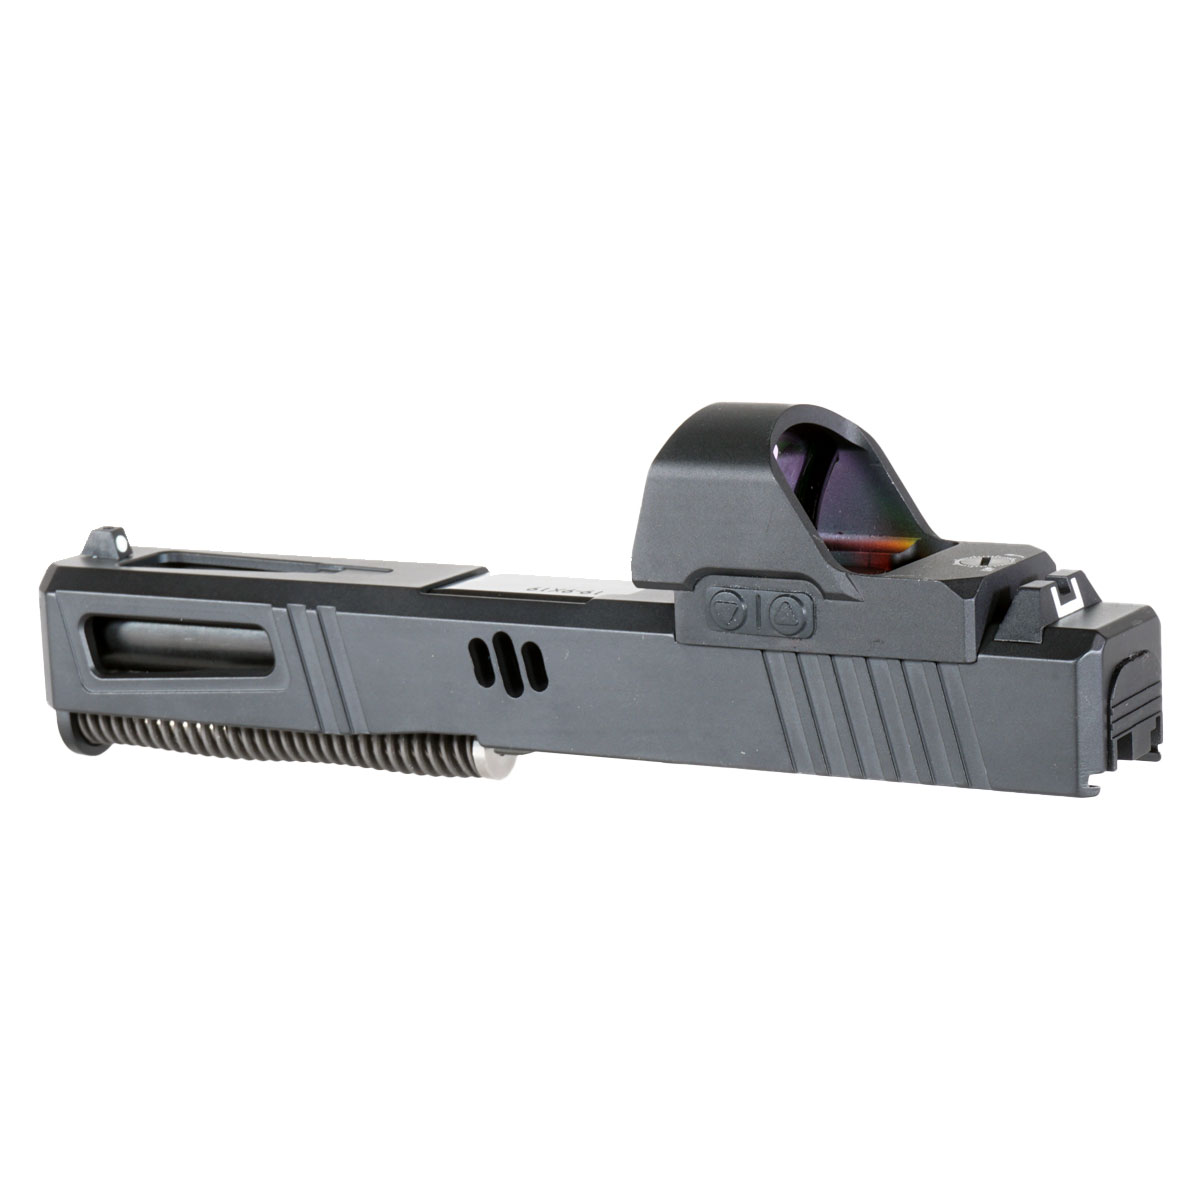 Glock 19 Gen 3 Complete Slide + Reflex Sight